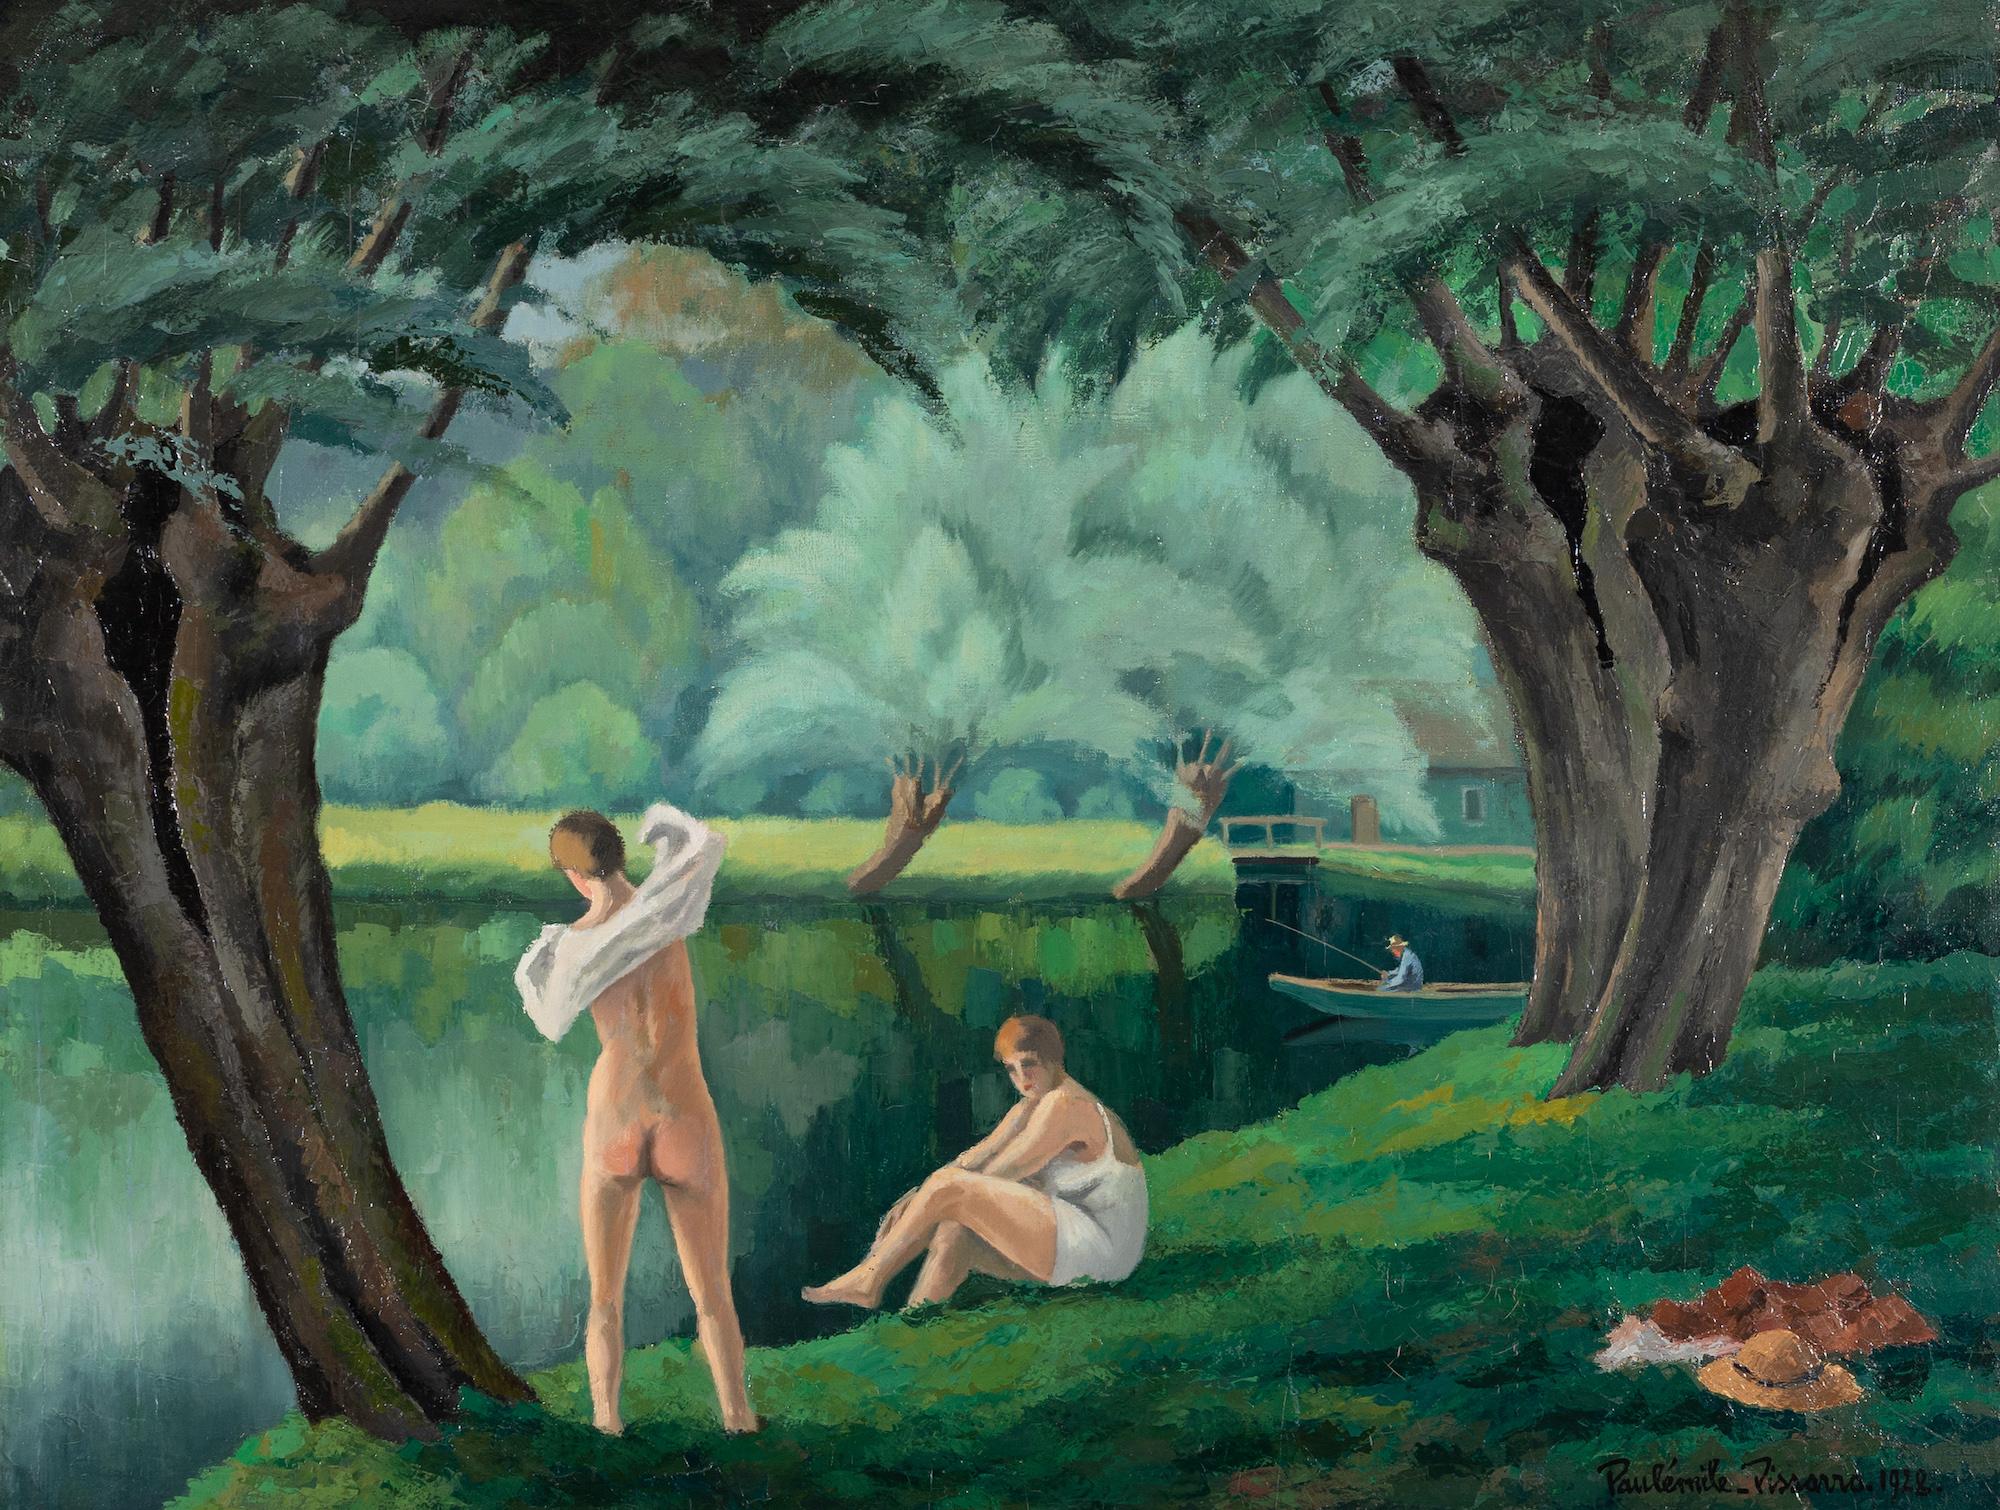 Figurative Painting Paul Emile Pissarro - Les Baigneuses par Paulémile Pissarro - Scène de nu, peinture de scène de rivière